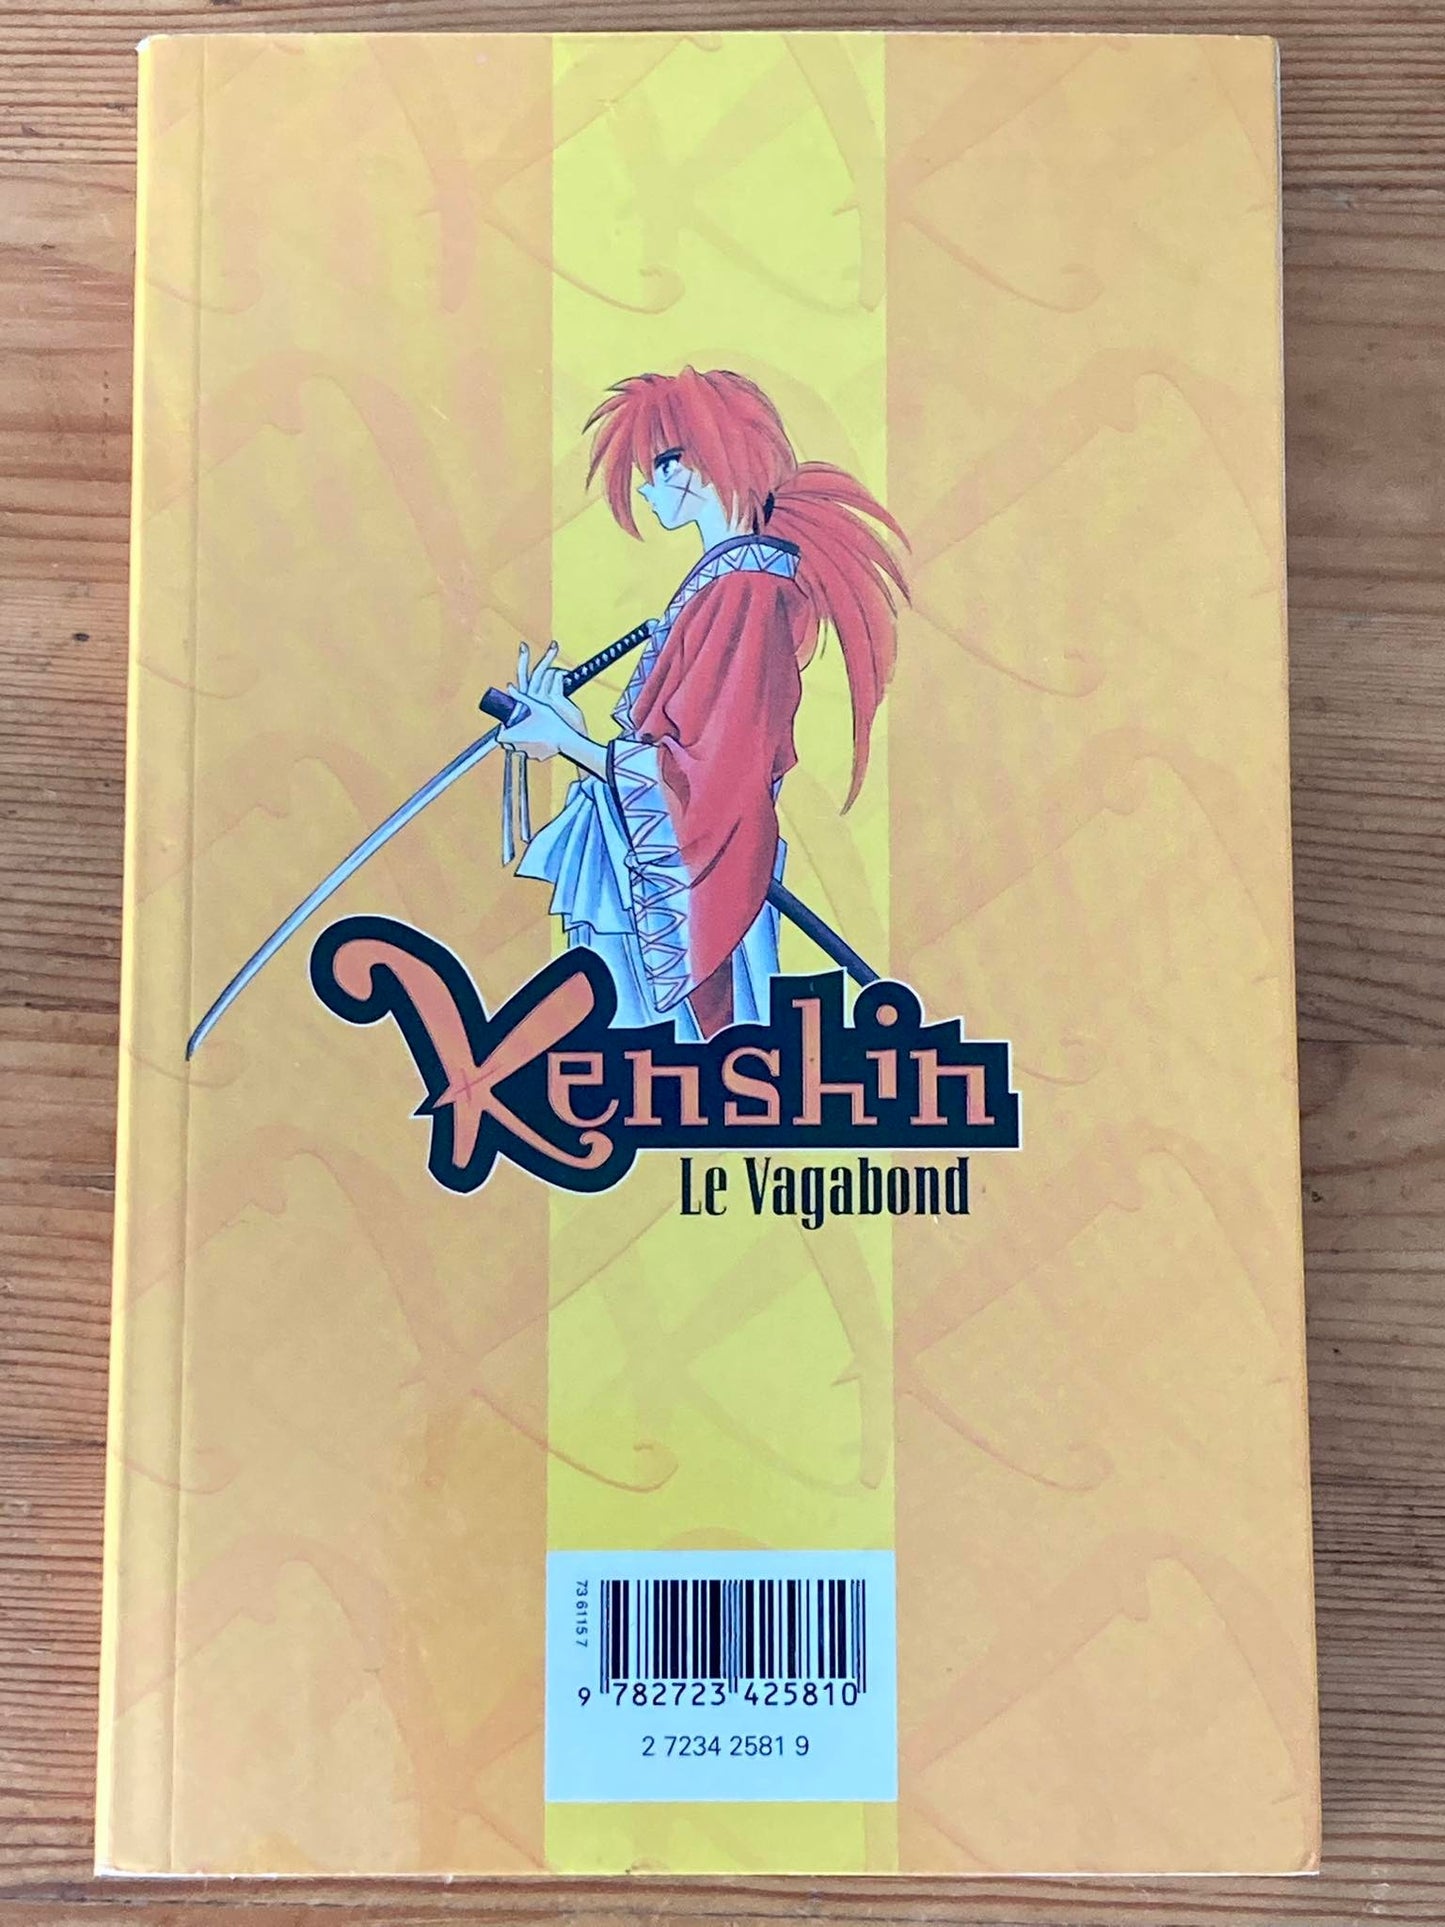 Kenshin - Le vagabond (1ère édition) T1